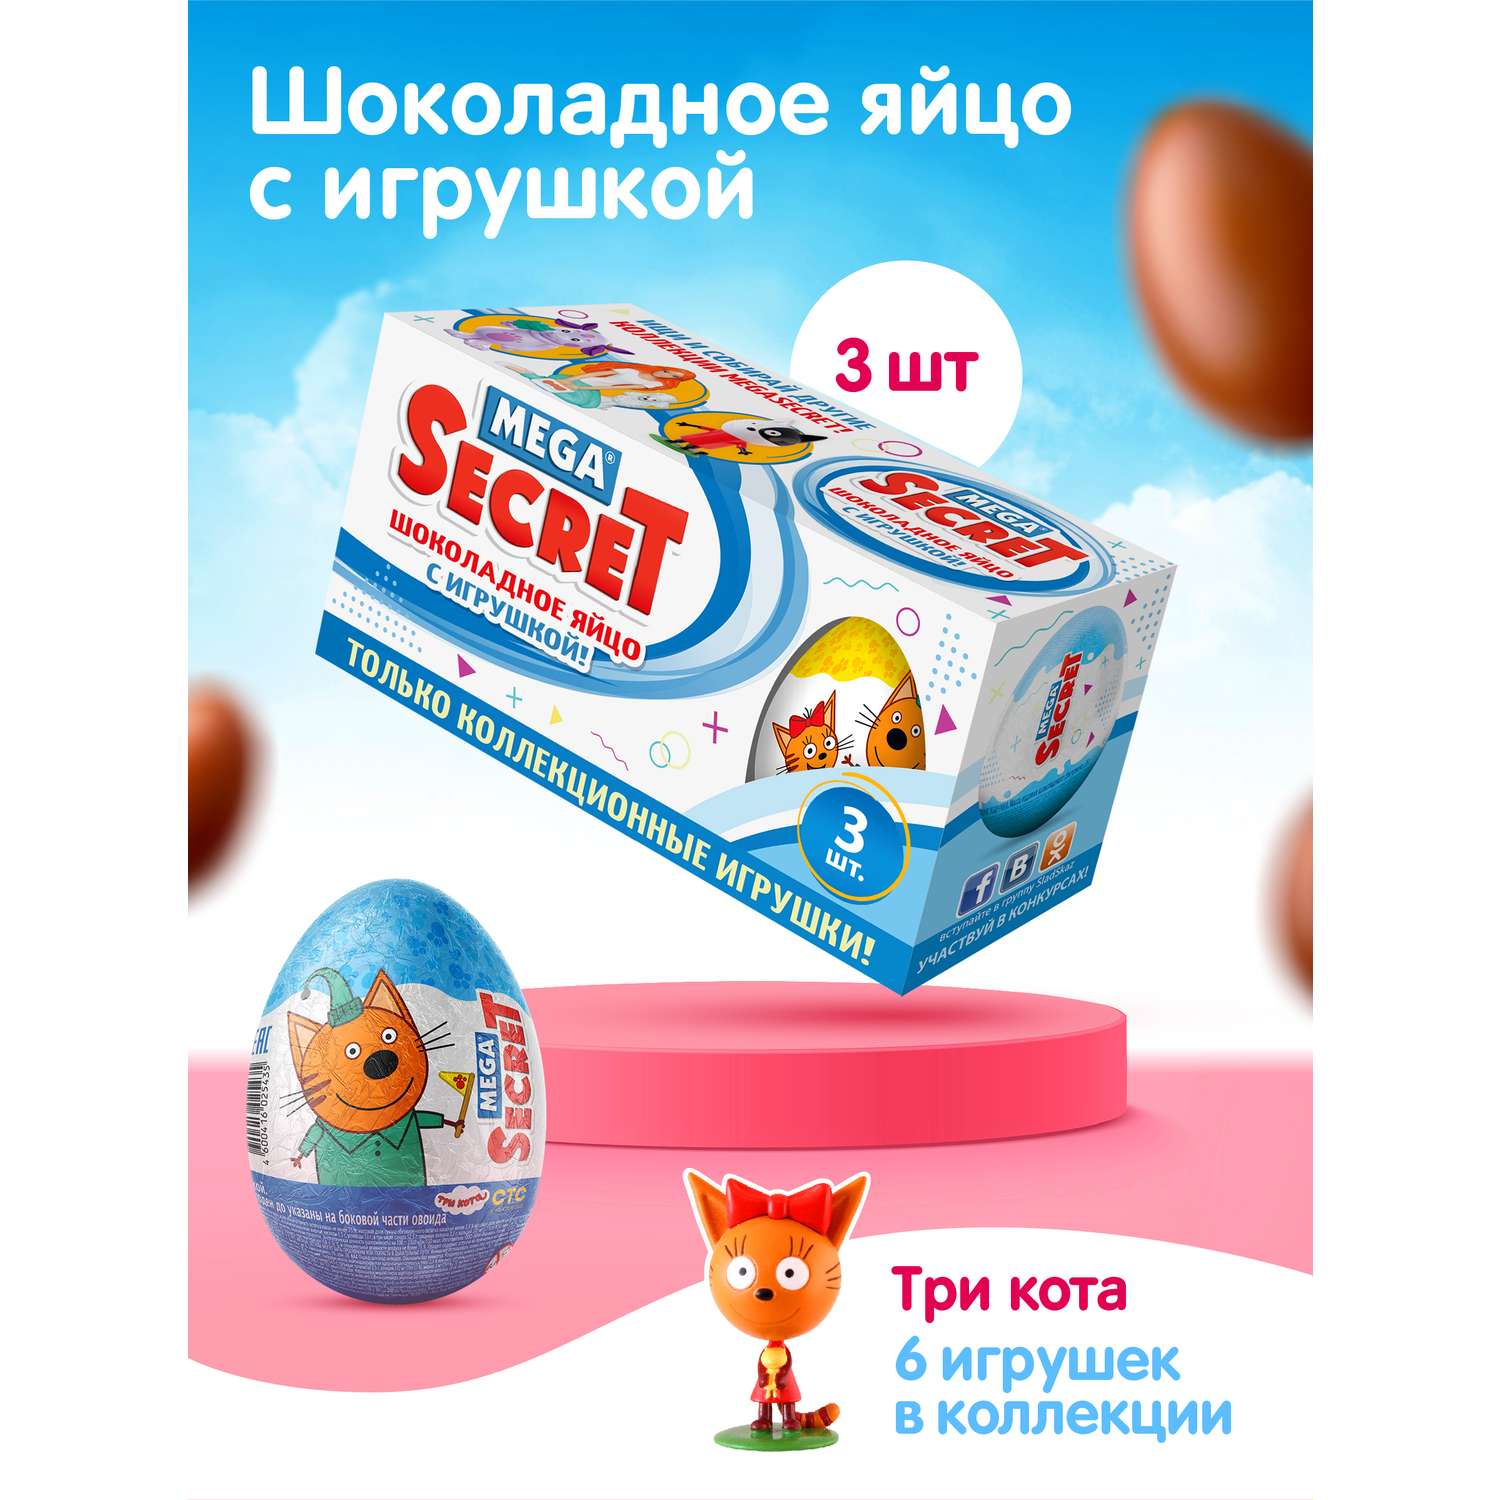 Шоколадное яйцо с игрушкой Сладкая сказка Mega secret Три кота 3шт х 20 г - фото 1